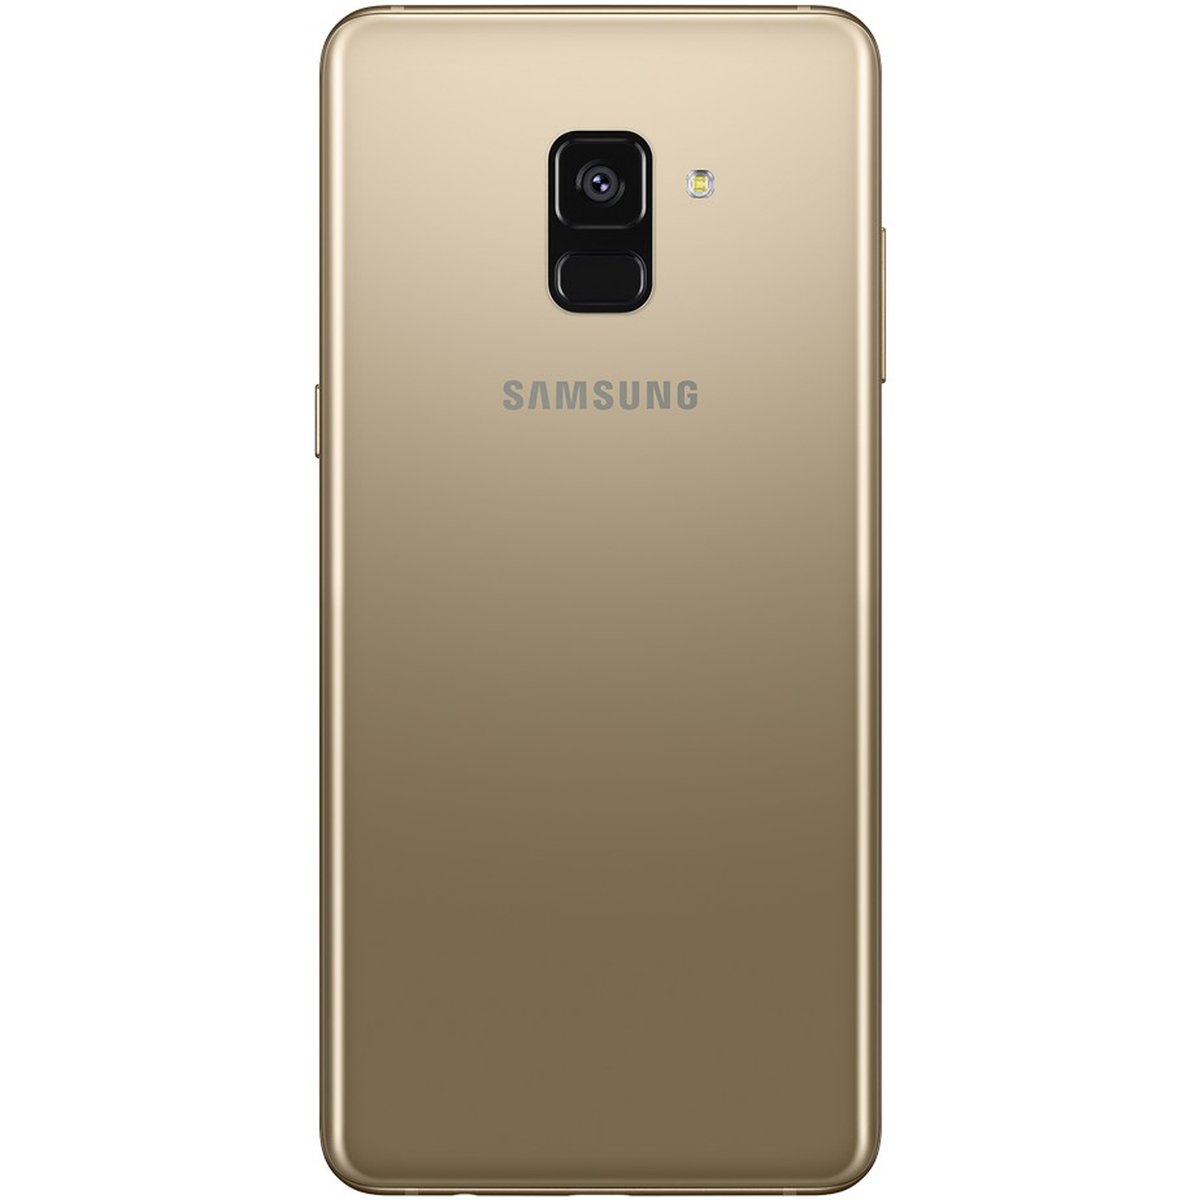 هاتف محمول سامسونج جالاكسي إيه8 بلس - 4 جي (إيه 730) 2018 - سعة تخزين 64 جيجابايت - ذهبي